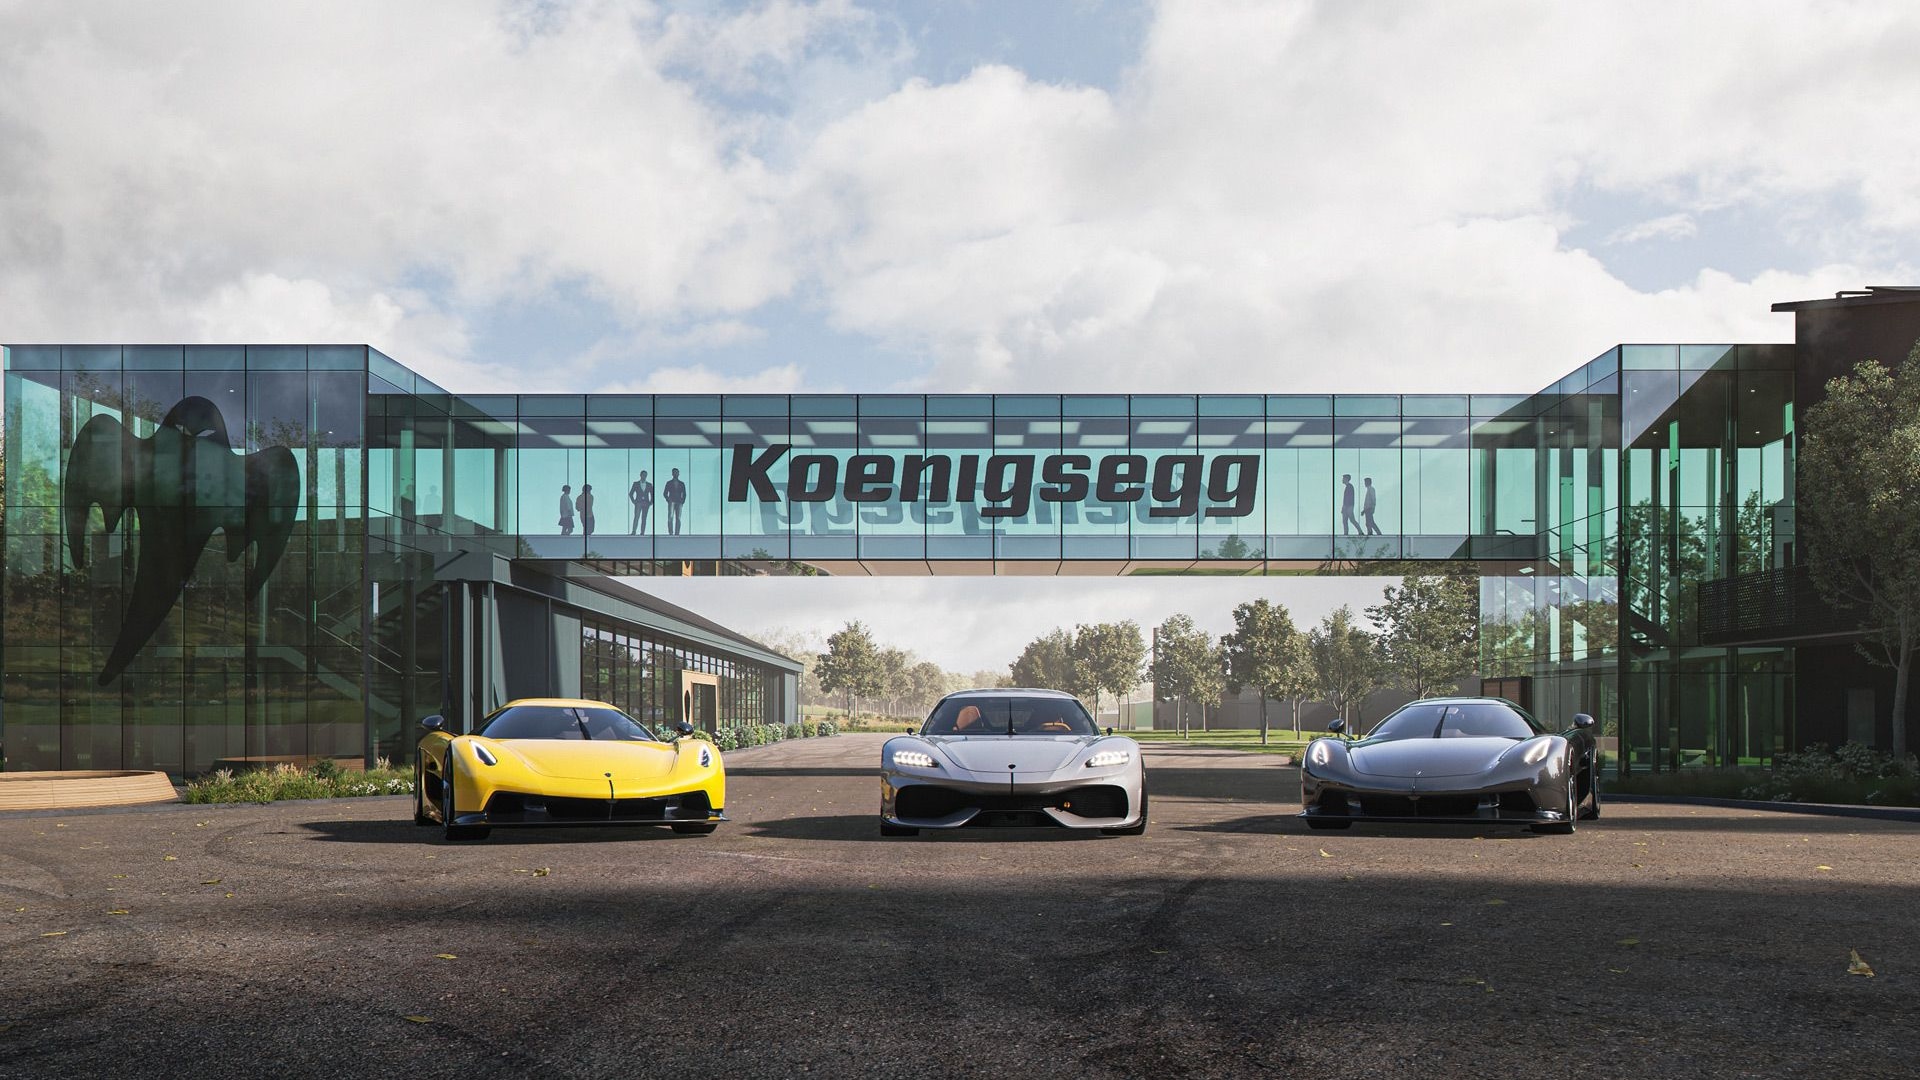 Artist's impression of new Koenigsegg plant planned for Aengelholm, Sweden